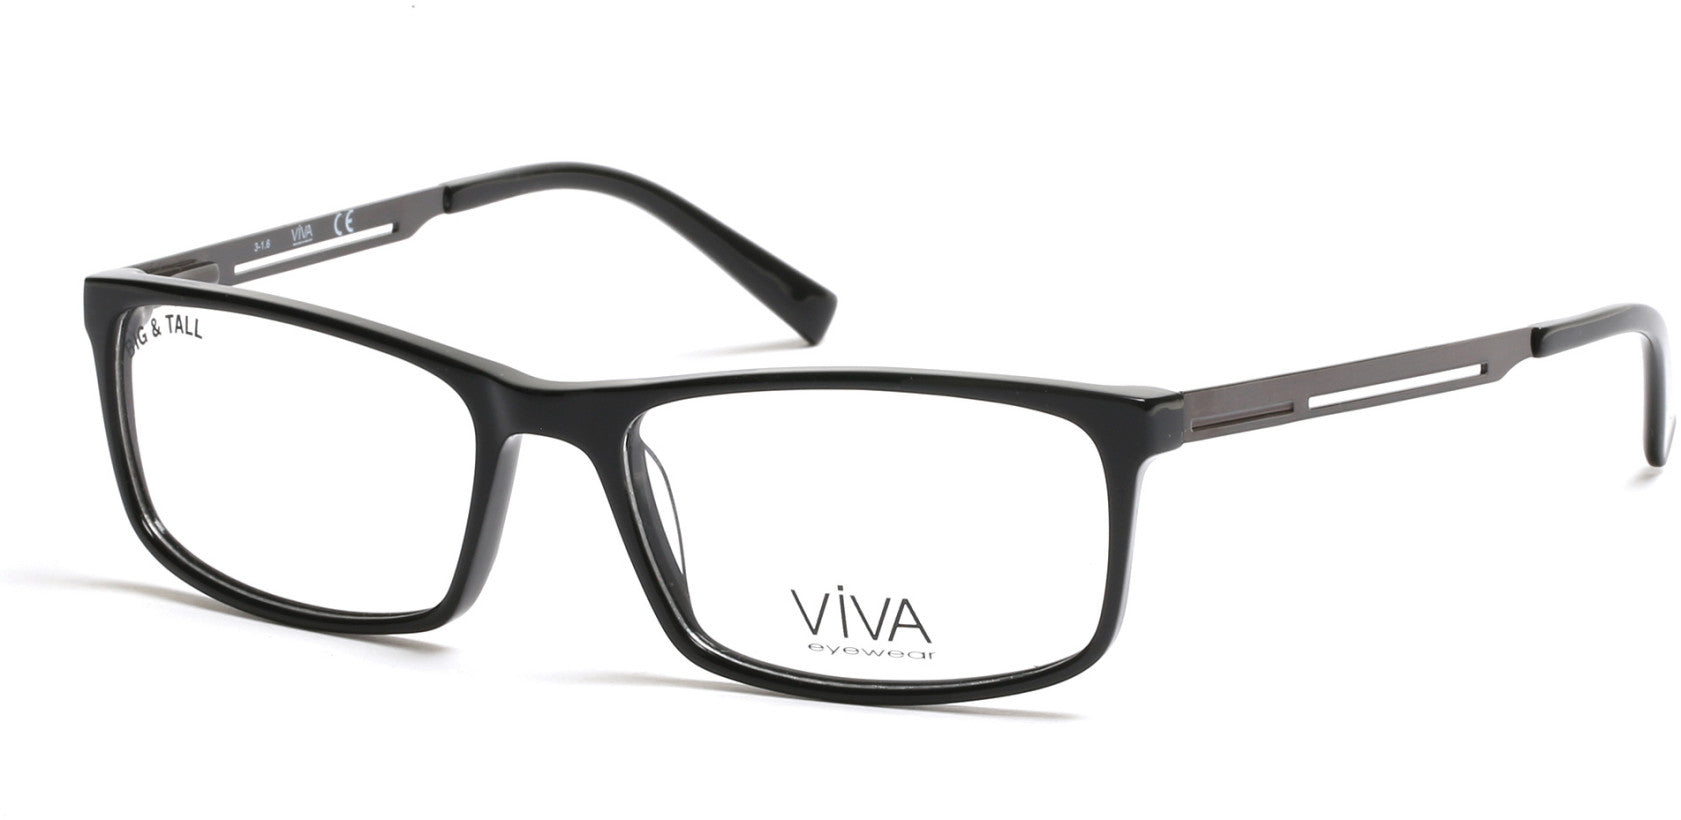 Viva VV4026 Eyeglasses 001-001 - Shiny Black